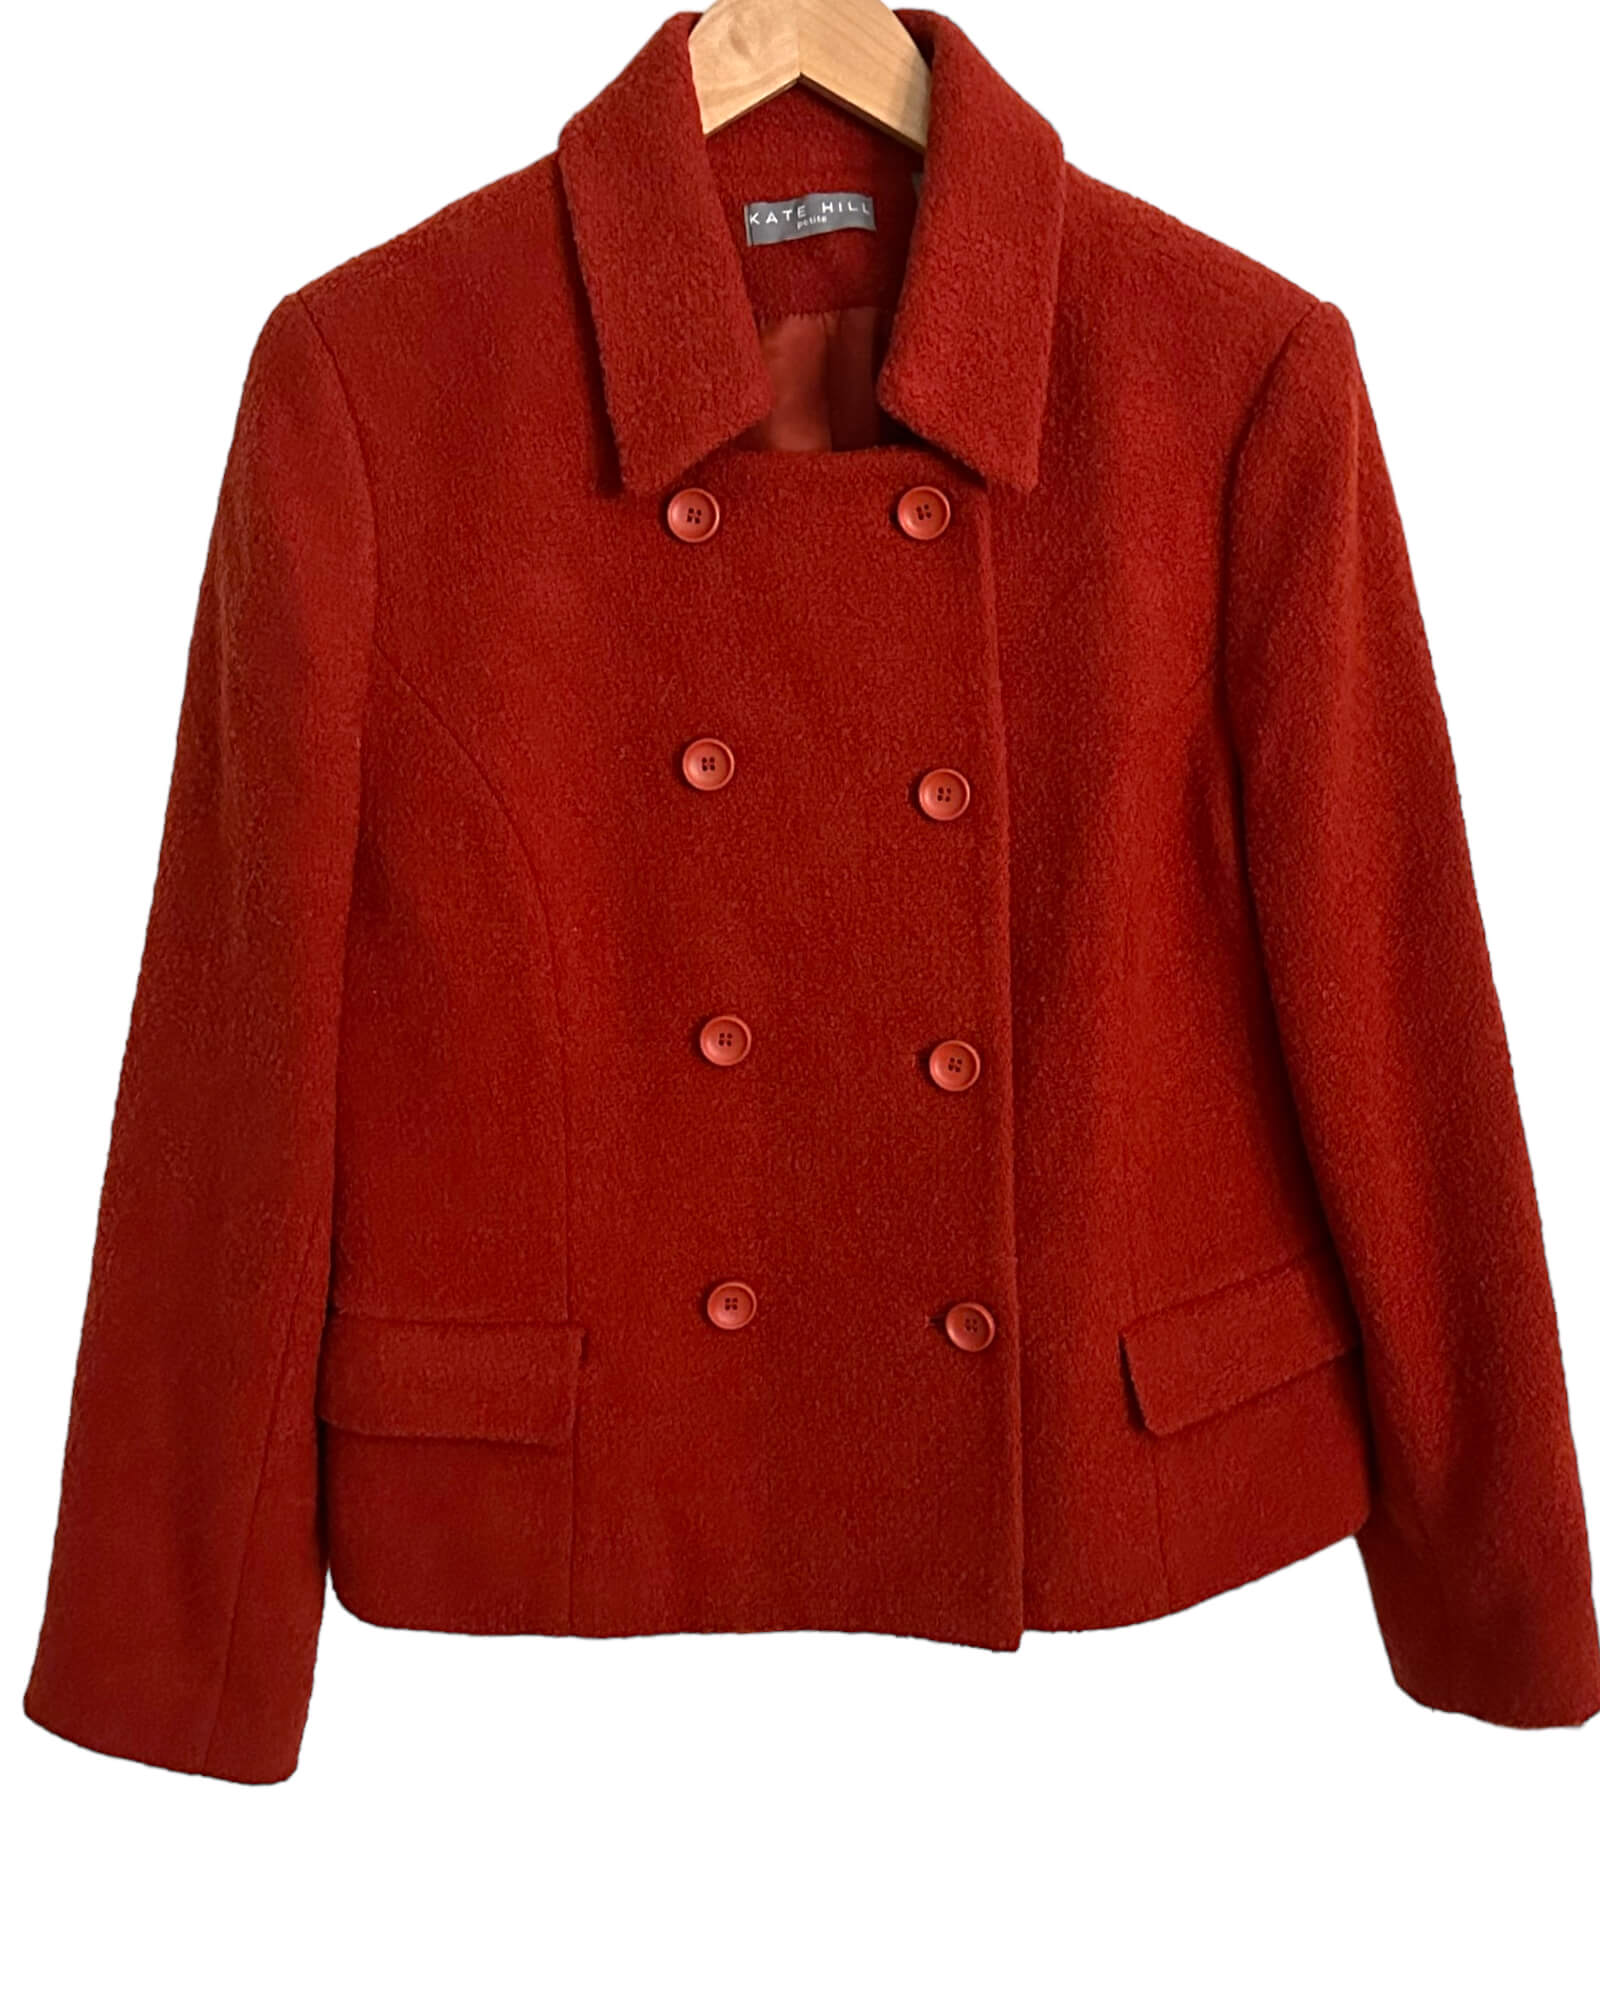 Warm Autumn KATE HILL harvest rust wool pea coat jacket 